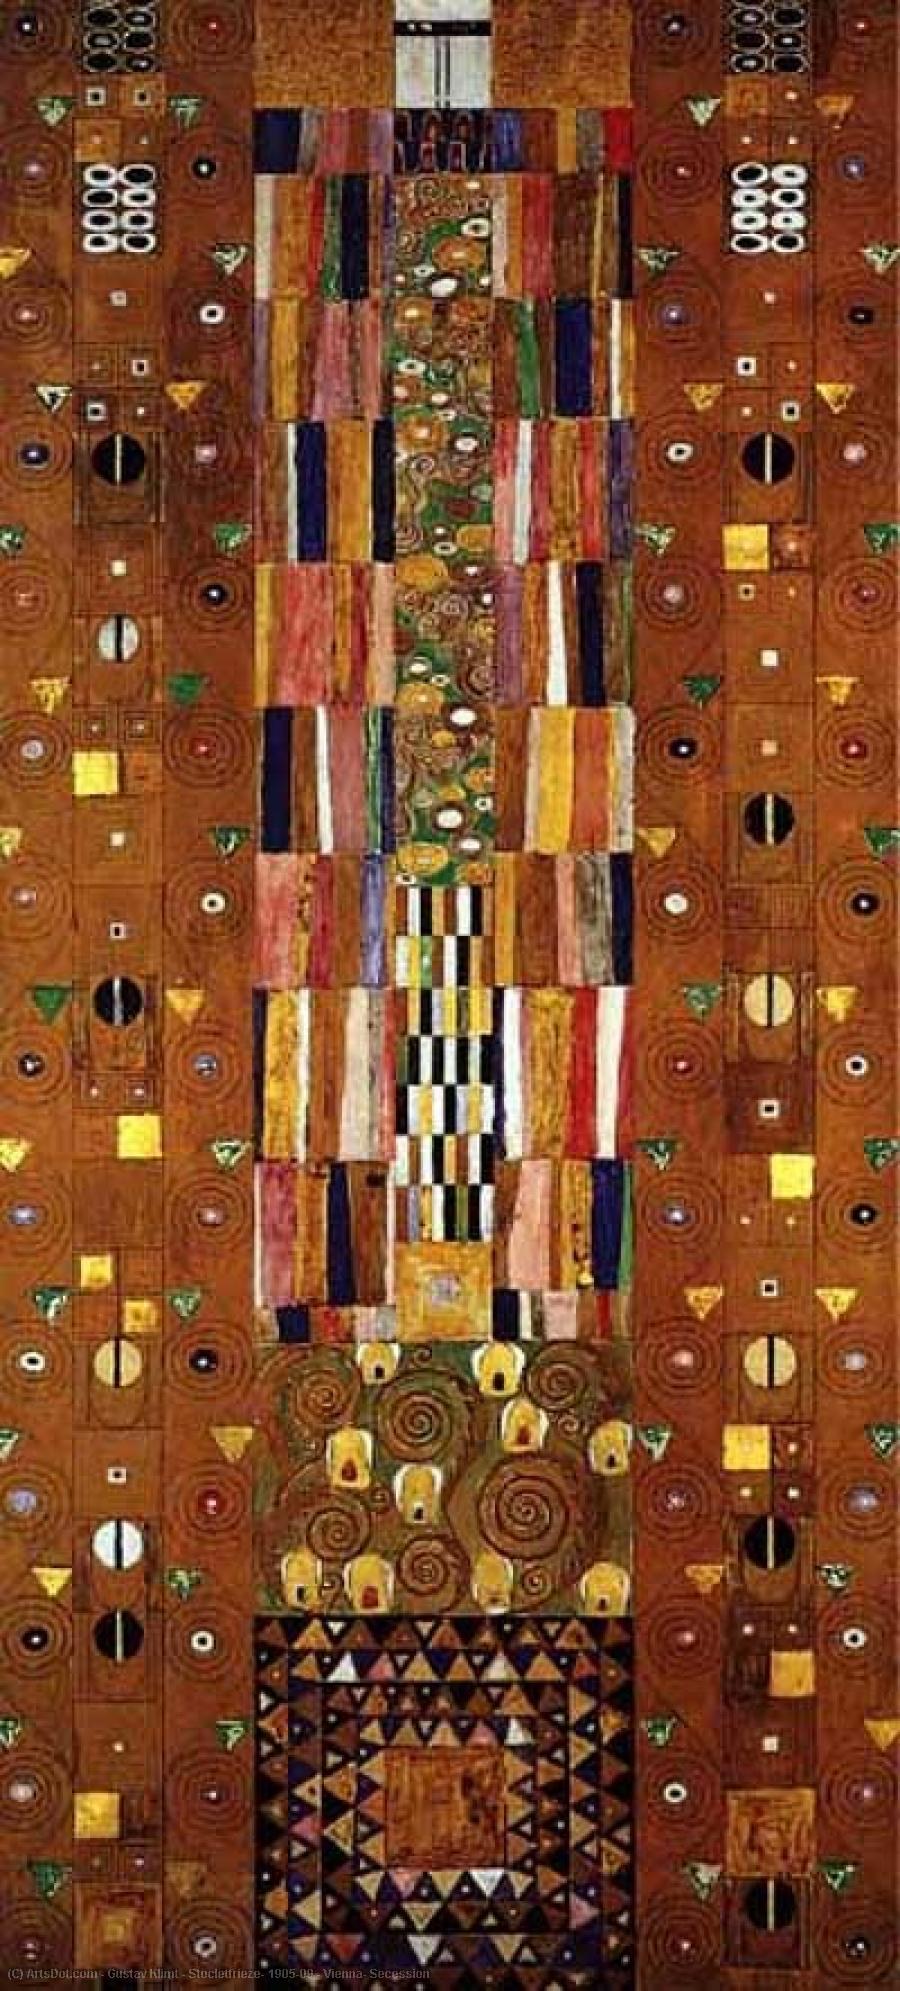 Wikoo.org - موسوعة الفنون الجميلة - اللوحة، العمل الفني Gustav Klimt - Stocletfrieze, 1905-09 - Vienna, Secession